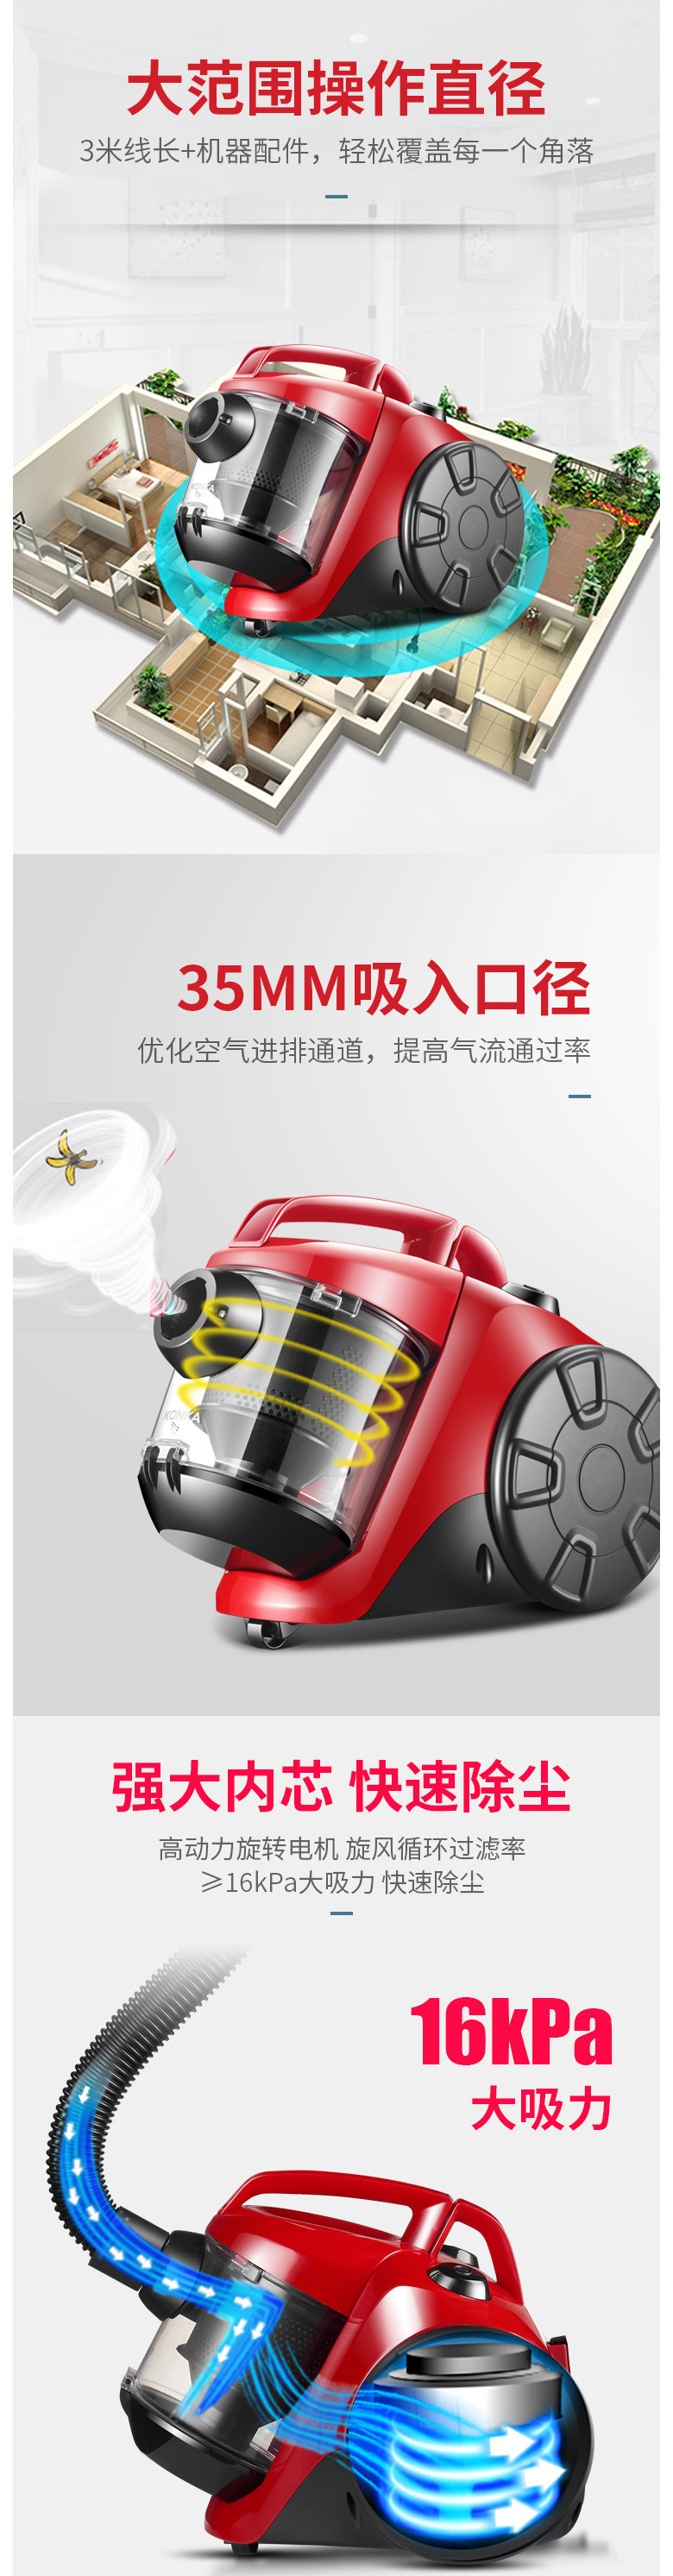 康佳/KONKA 吸尘器 家用无耗材卧式吸尘器KZ-X12